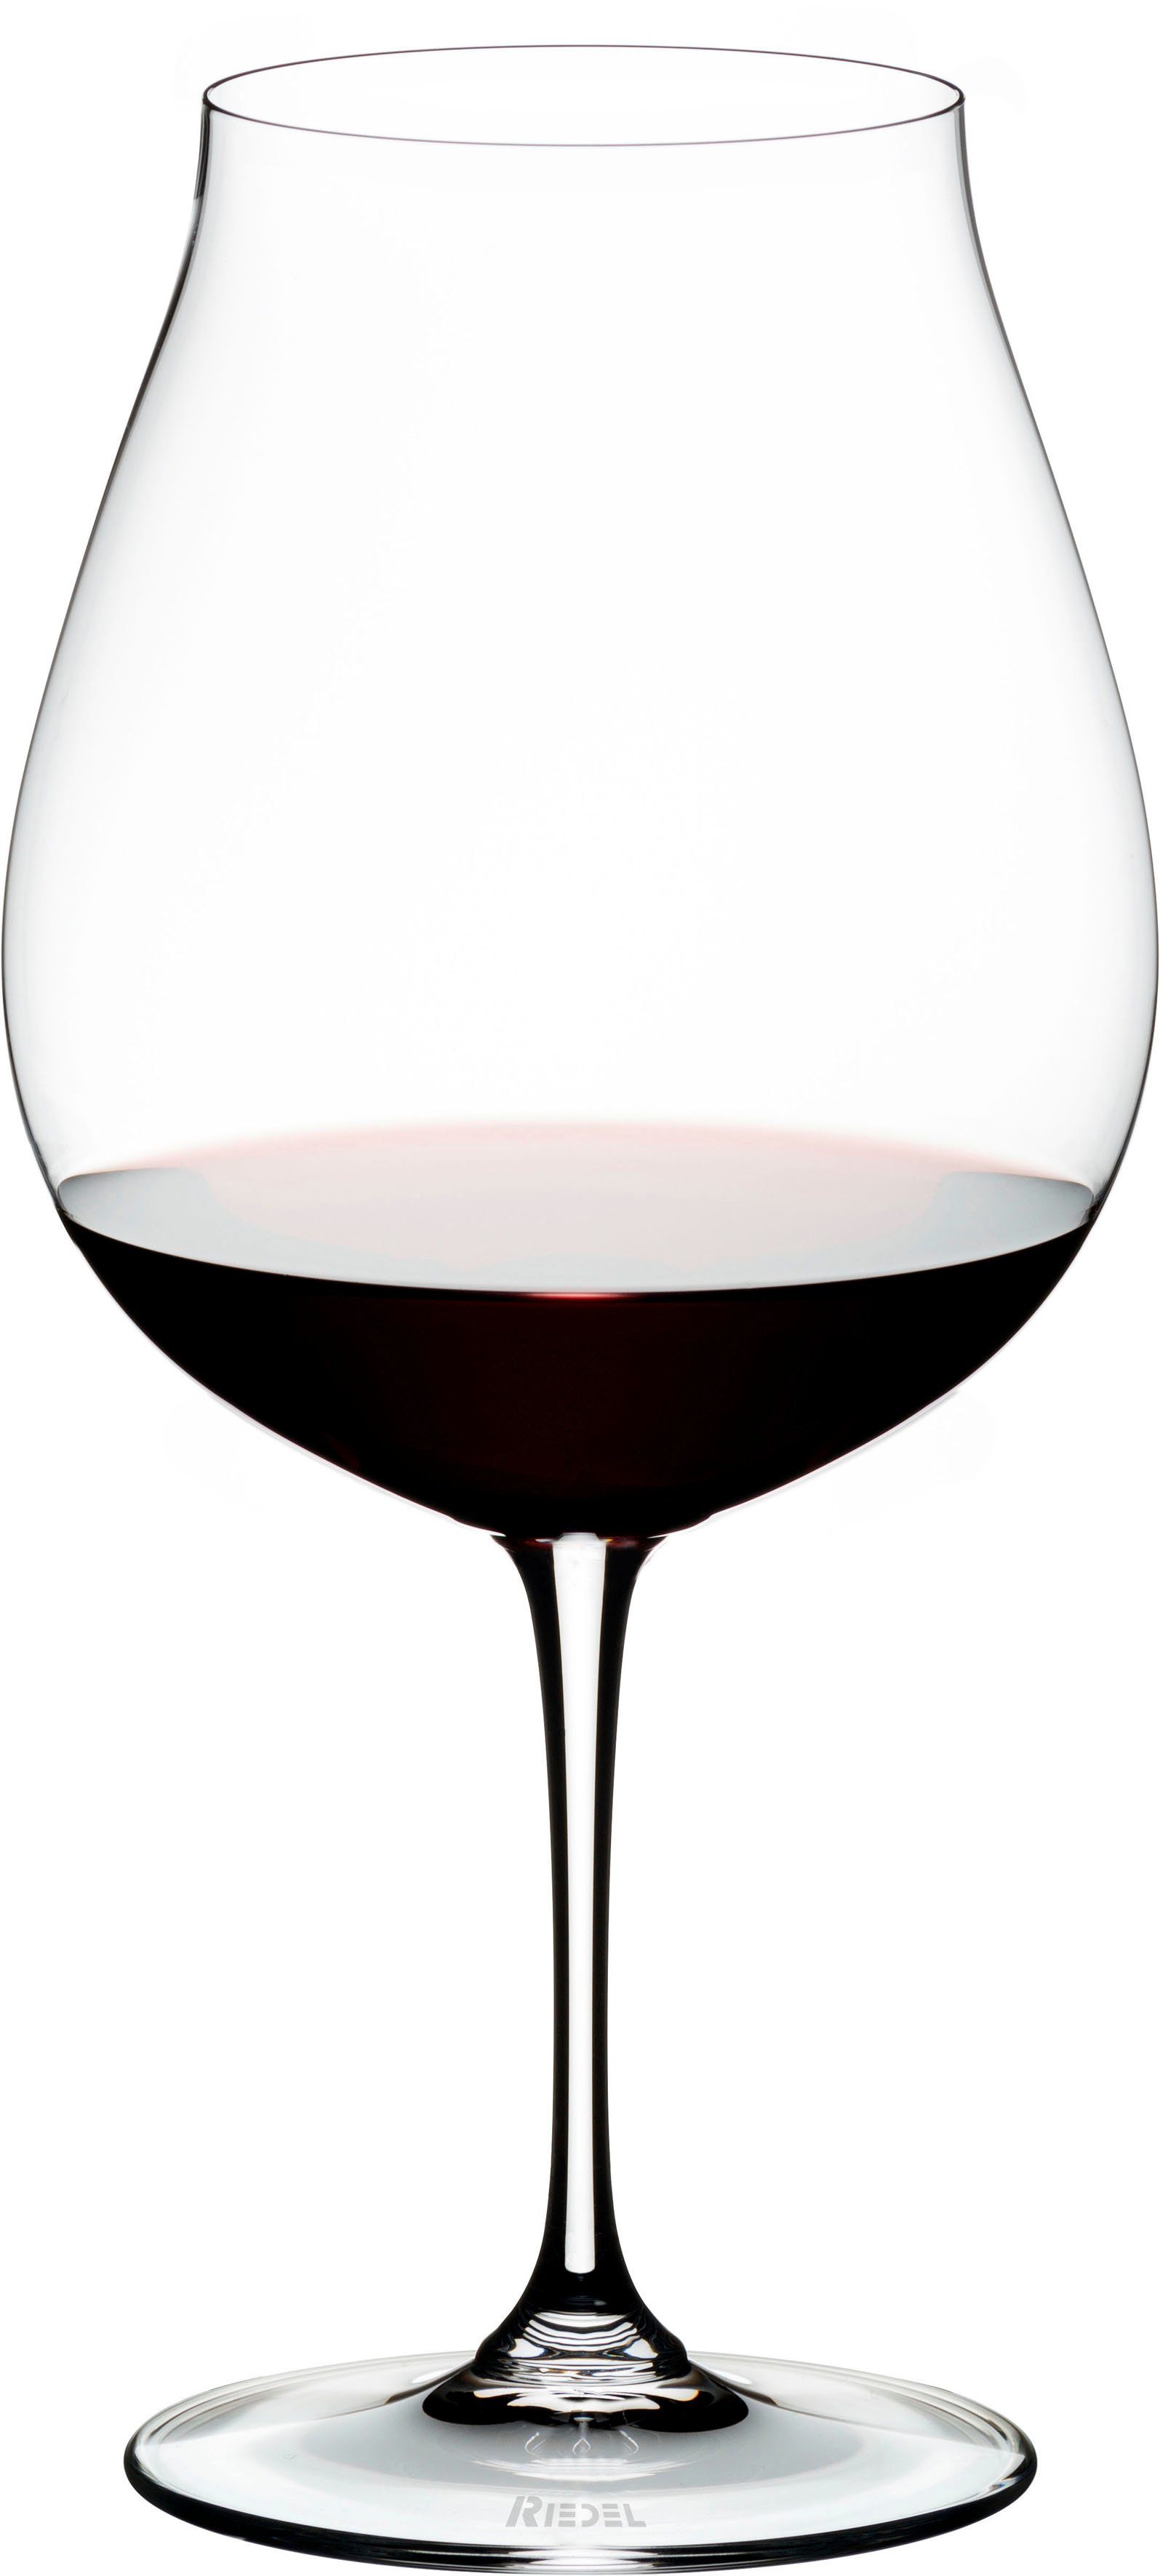 RIEDEL Glas Rotweinglas Vinum, Kristallglas, Made in Germany, 800 ml, 2-teilig